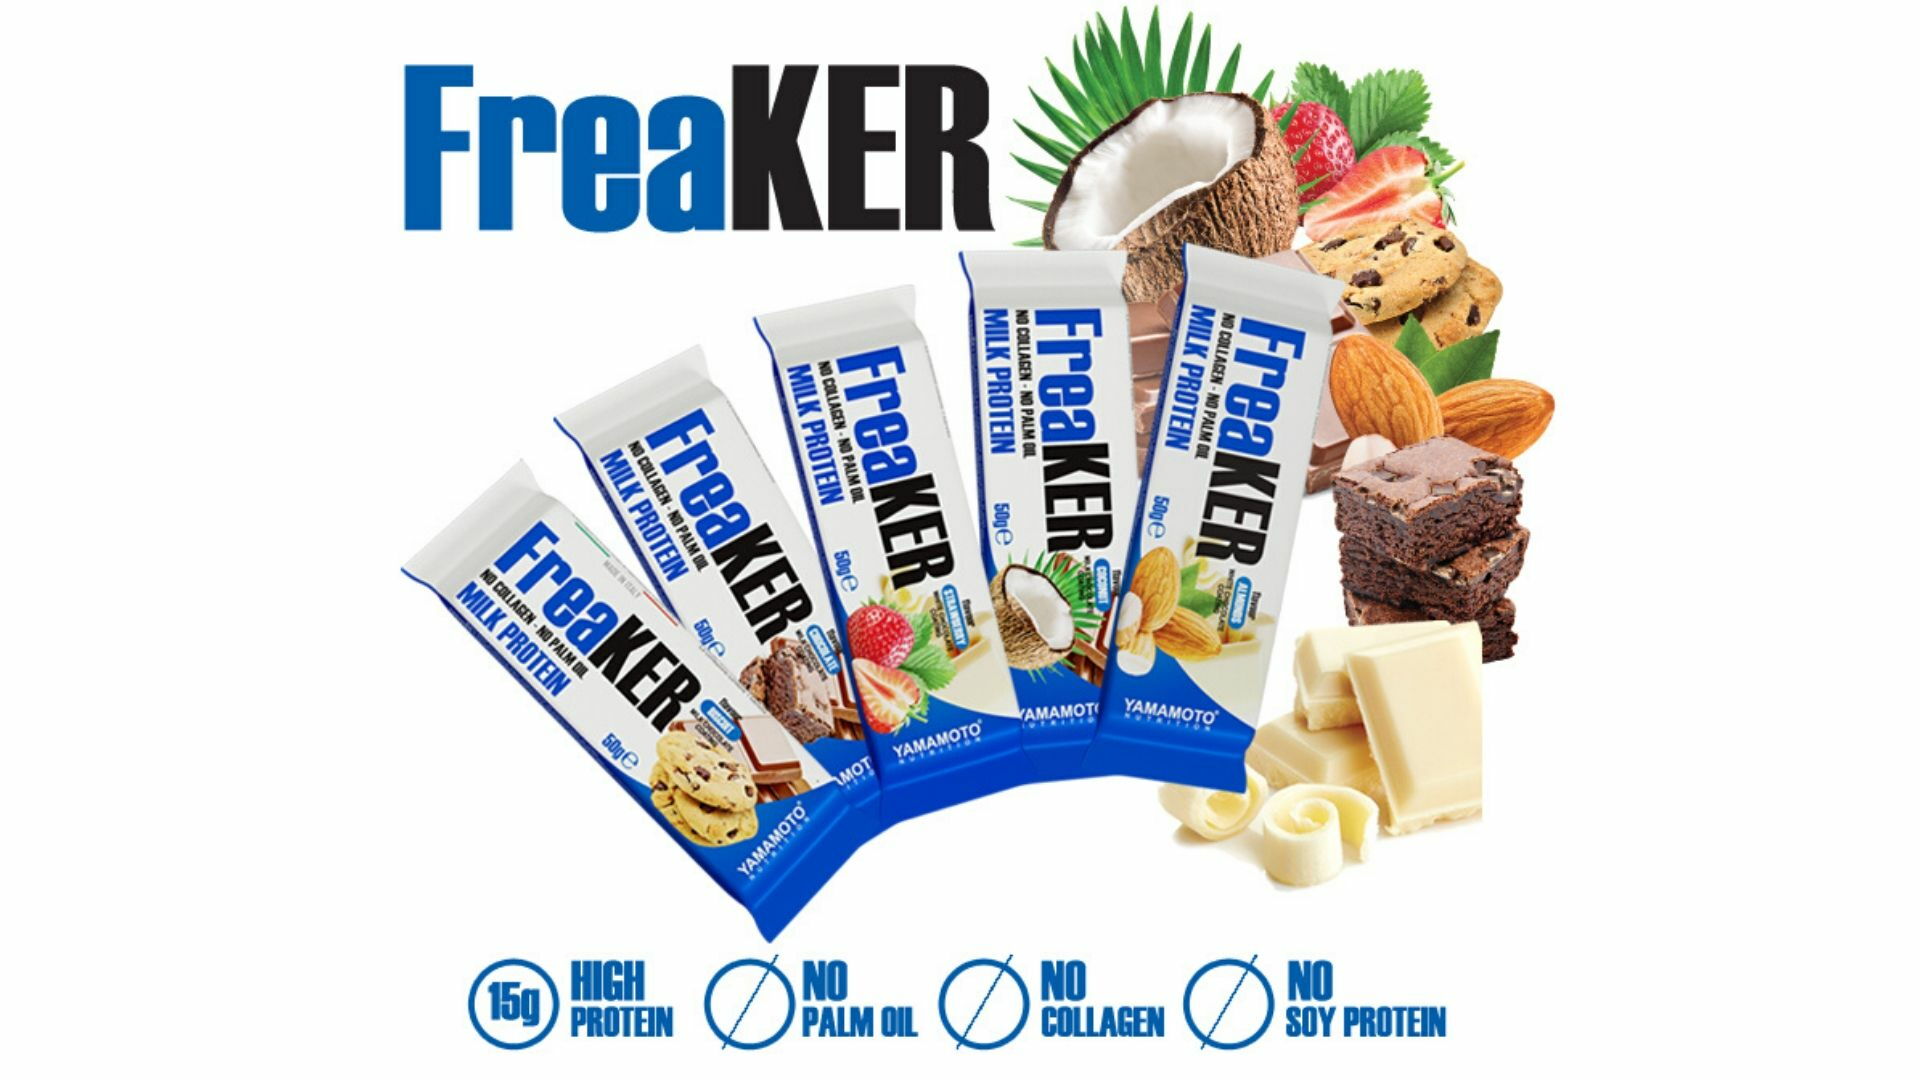 Freaker protein bars